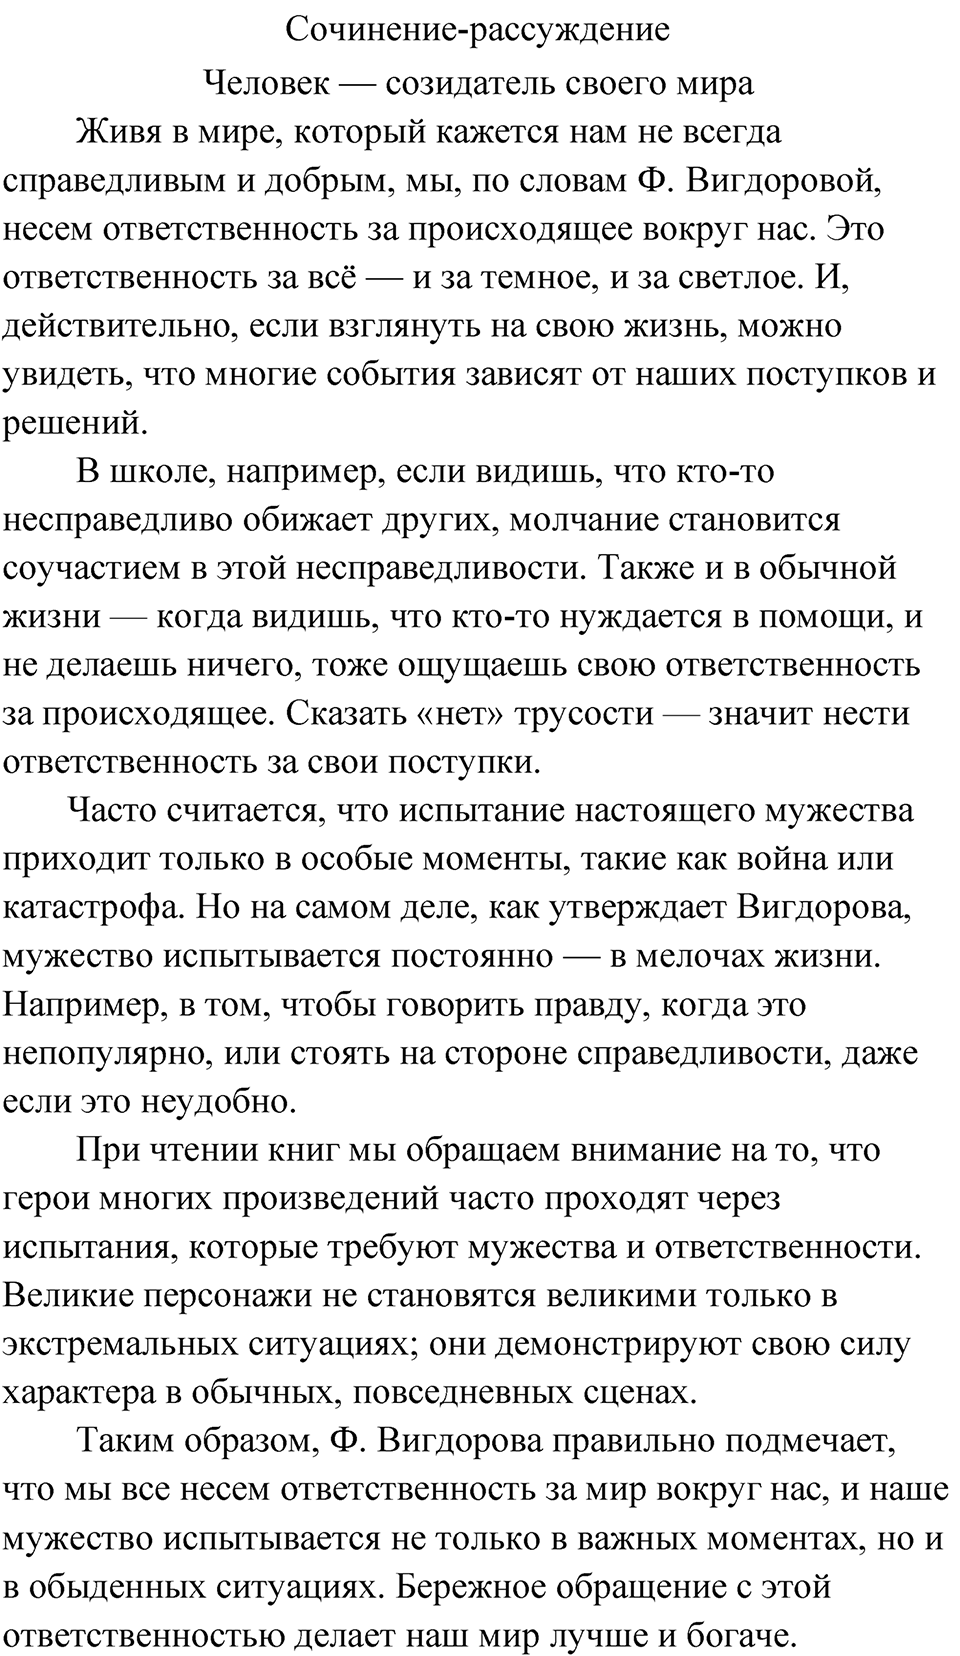 страница 9 упражнение 6 русский язык 9 класс Быстрова 2 часть 2022 год